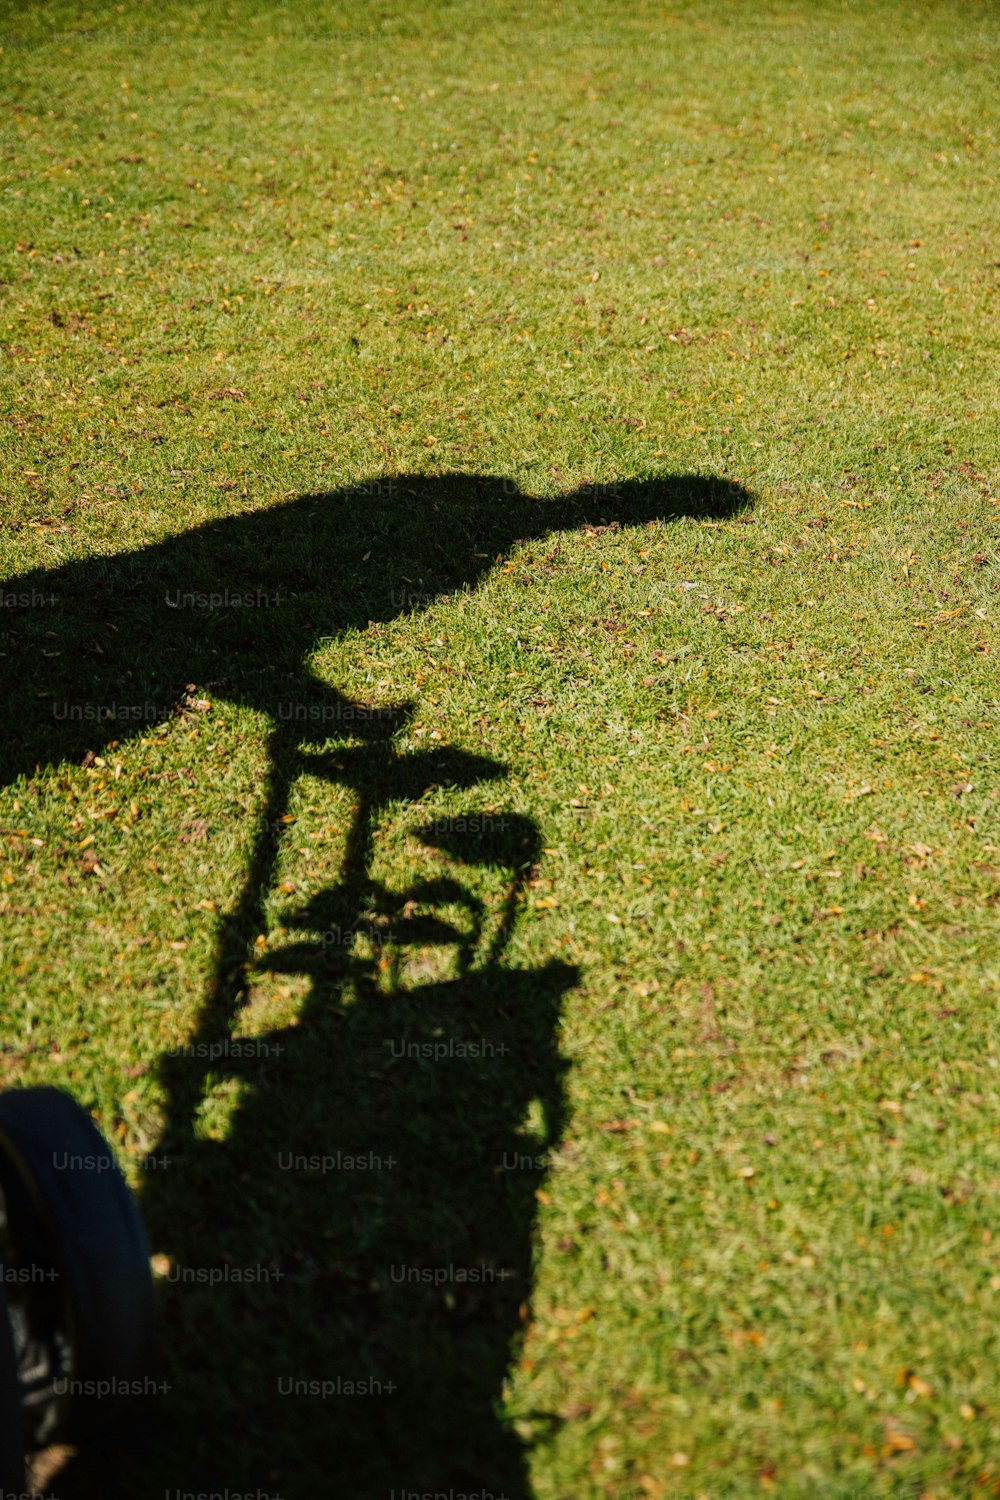 L'ombra di una persona in sella a una bicicletta nell'erba